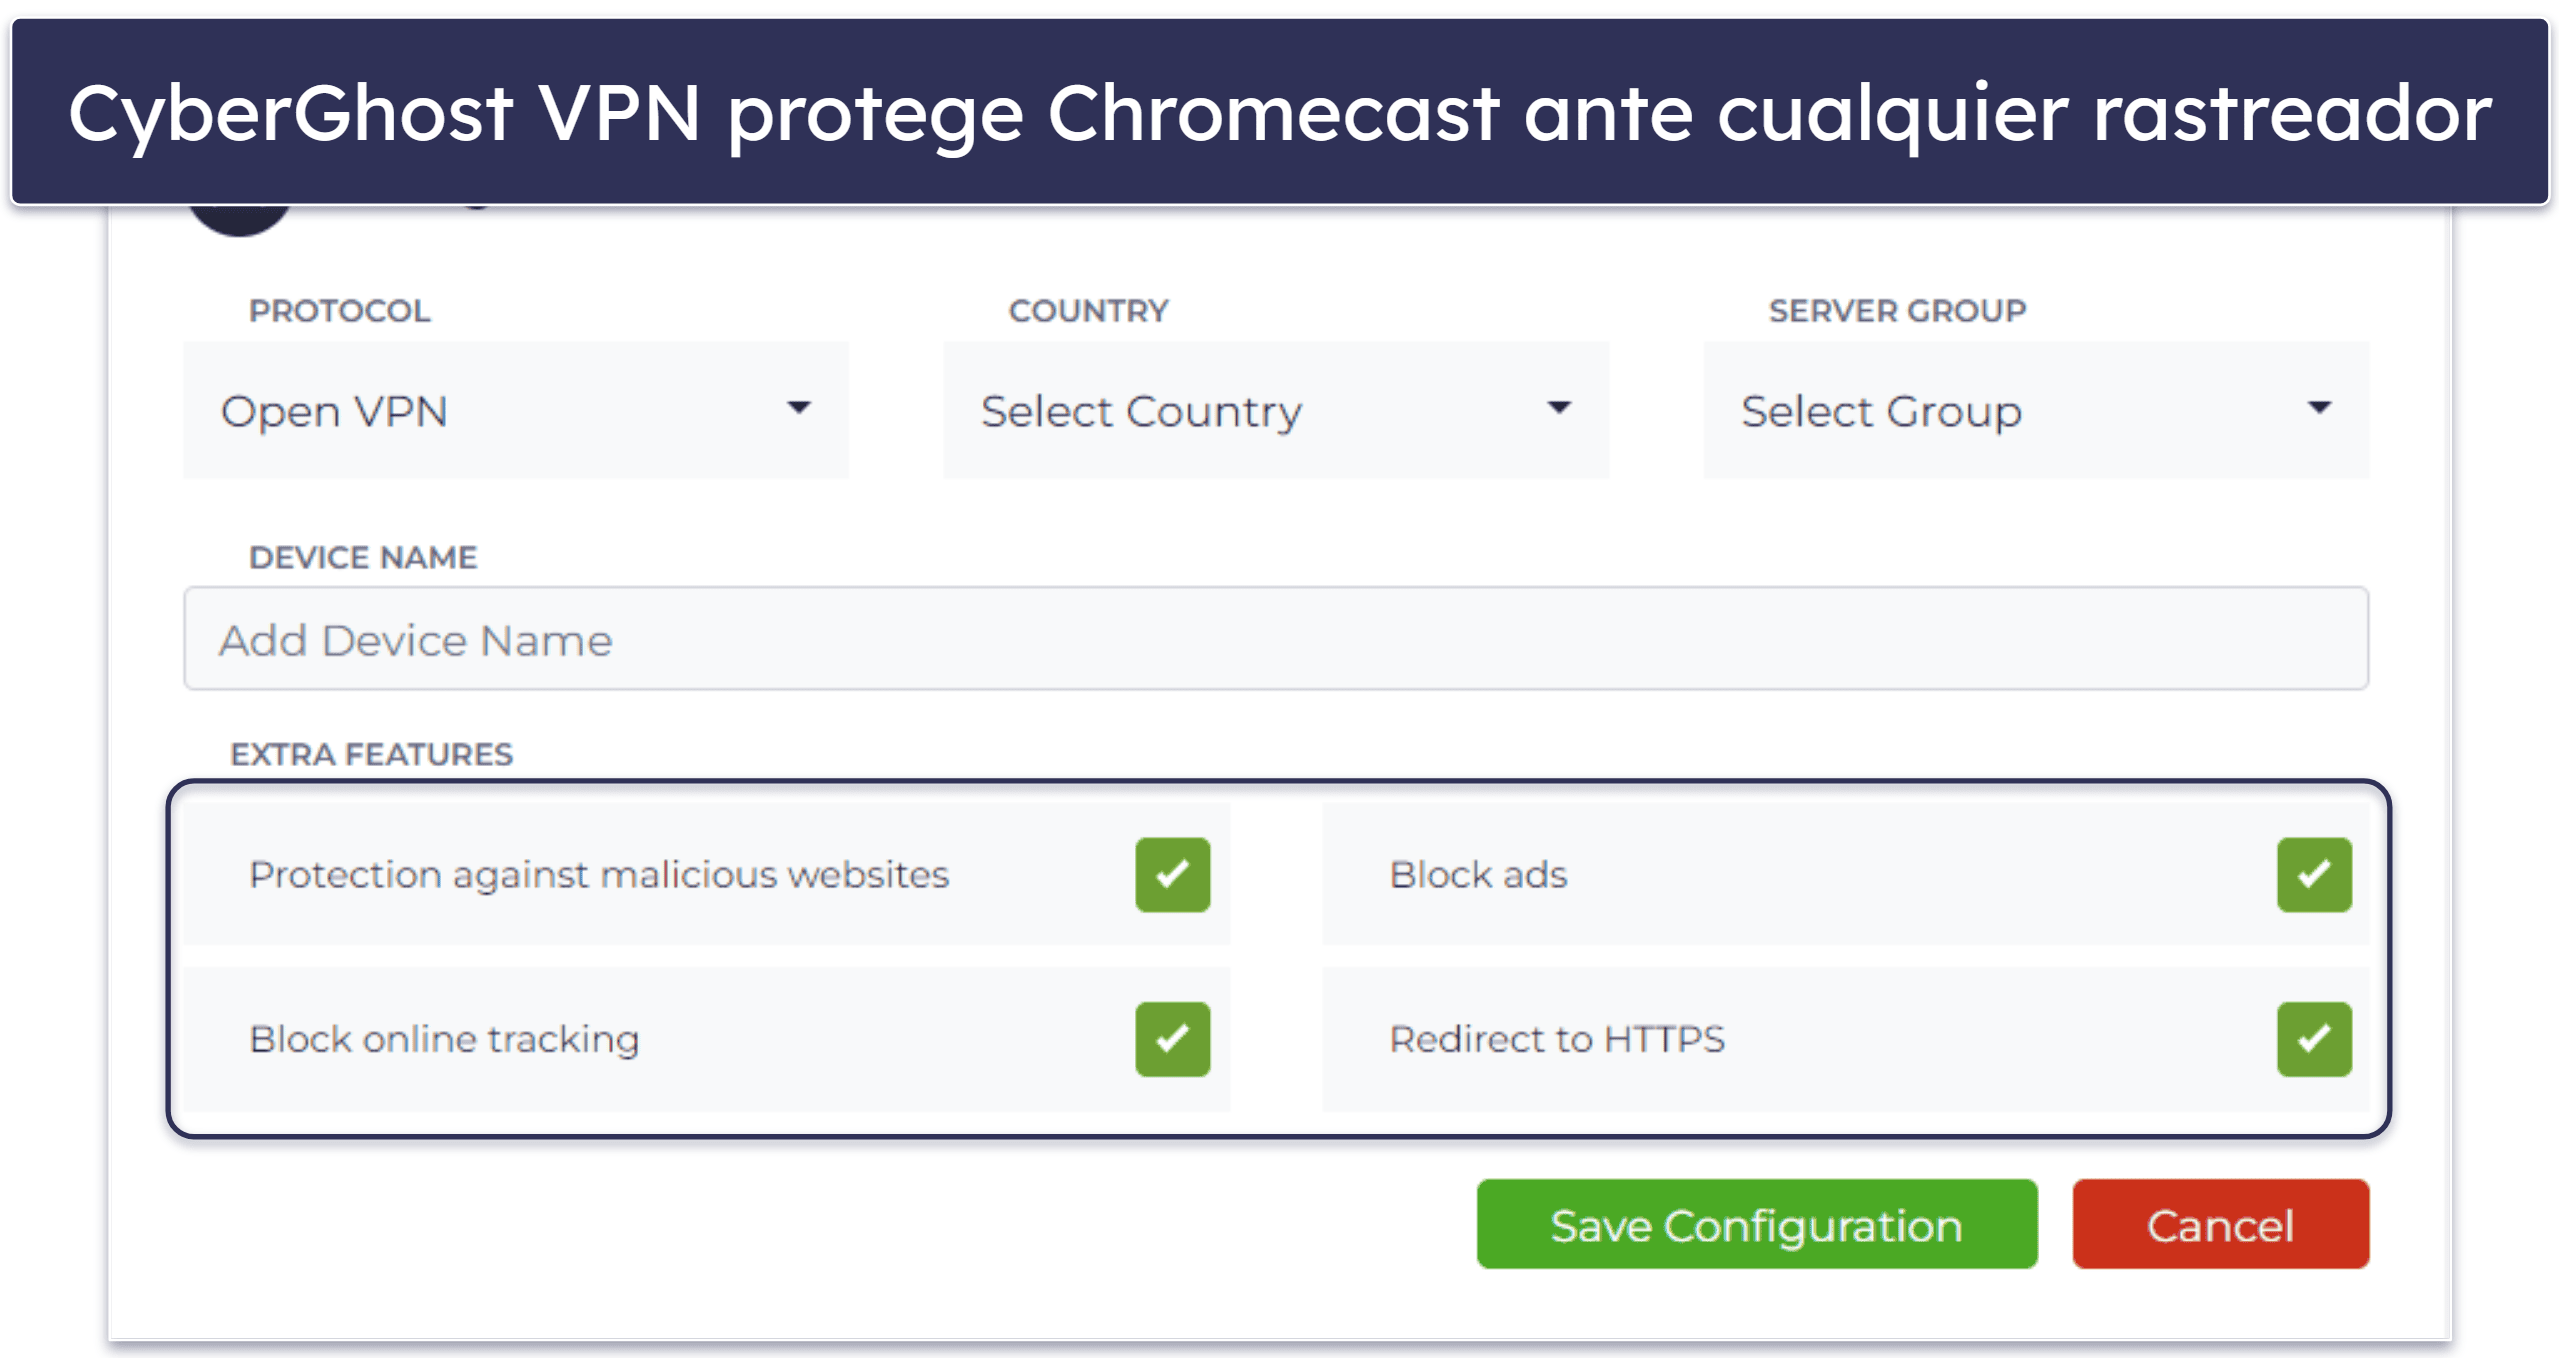 🥉3. CyberGhost VPN: Configurar la VPN en Chromecast es muy fácil